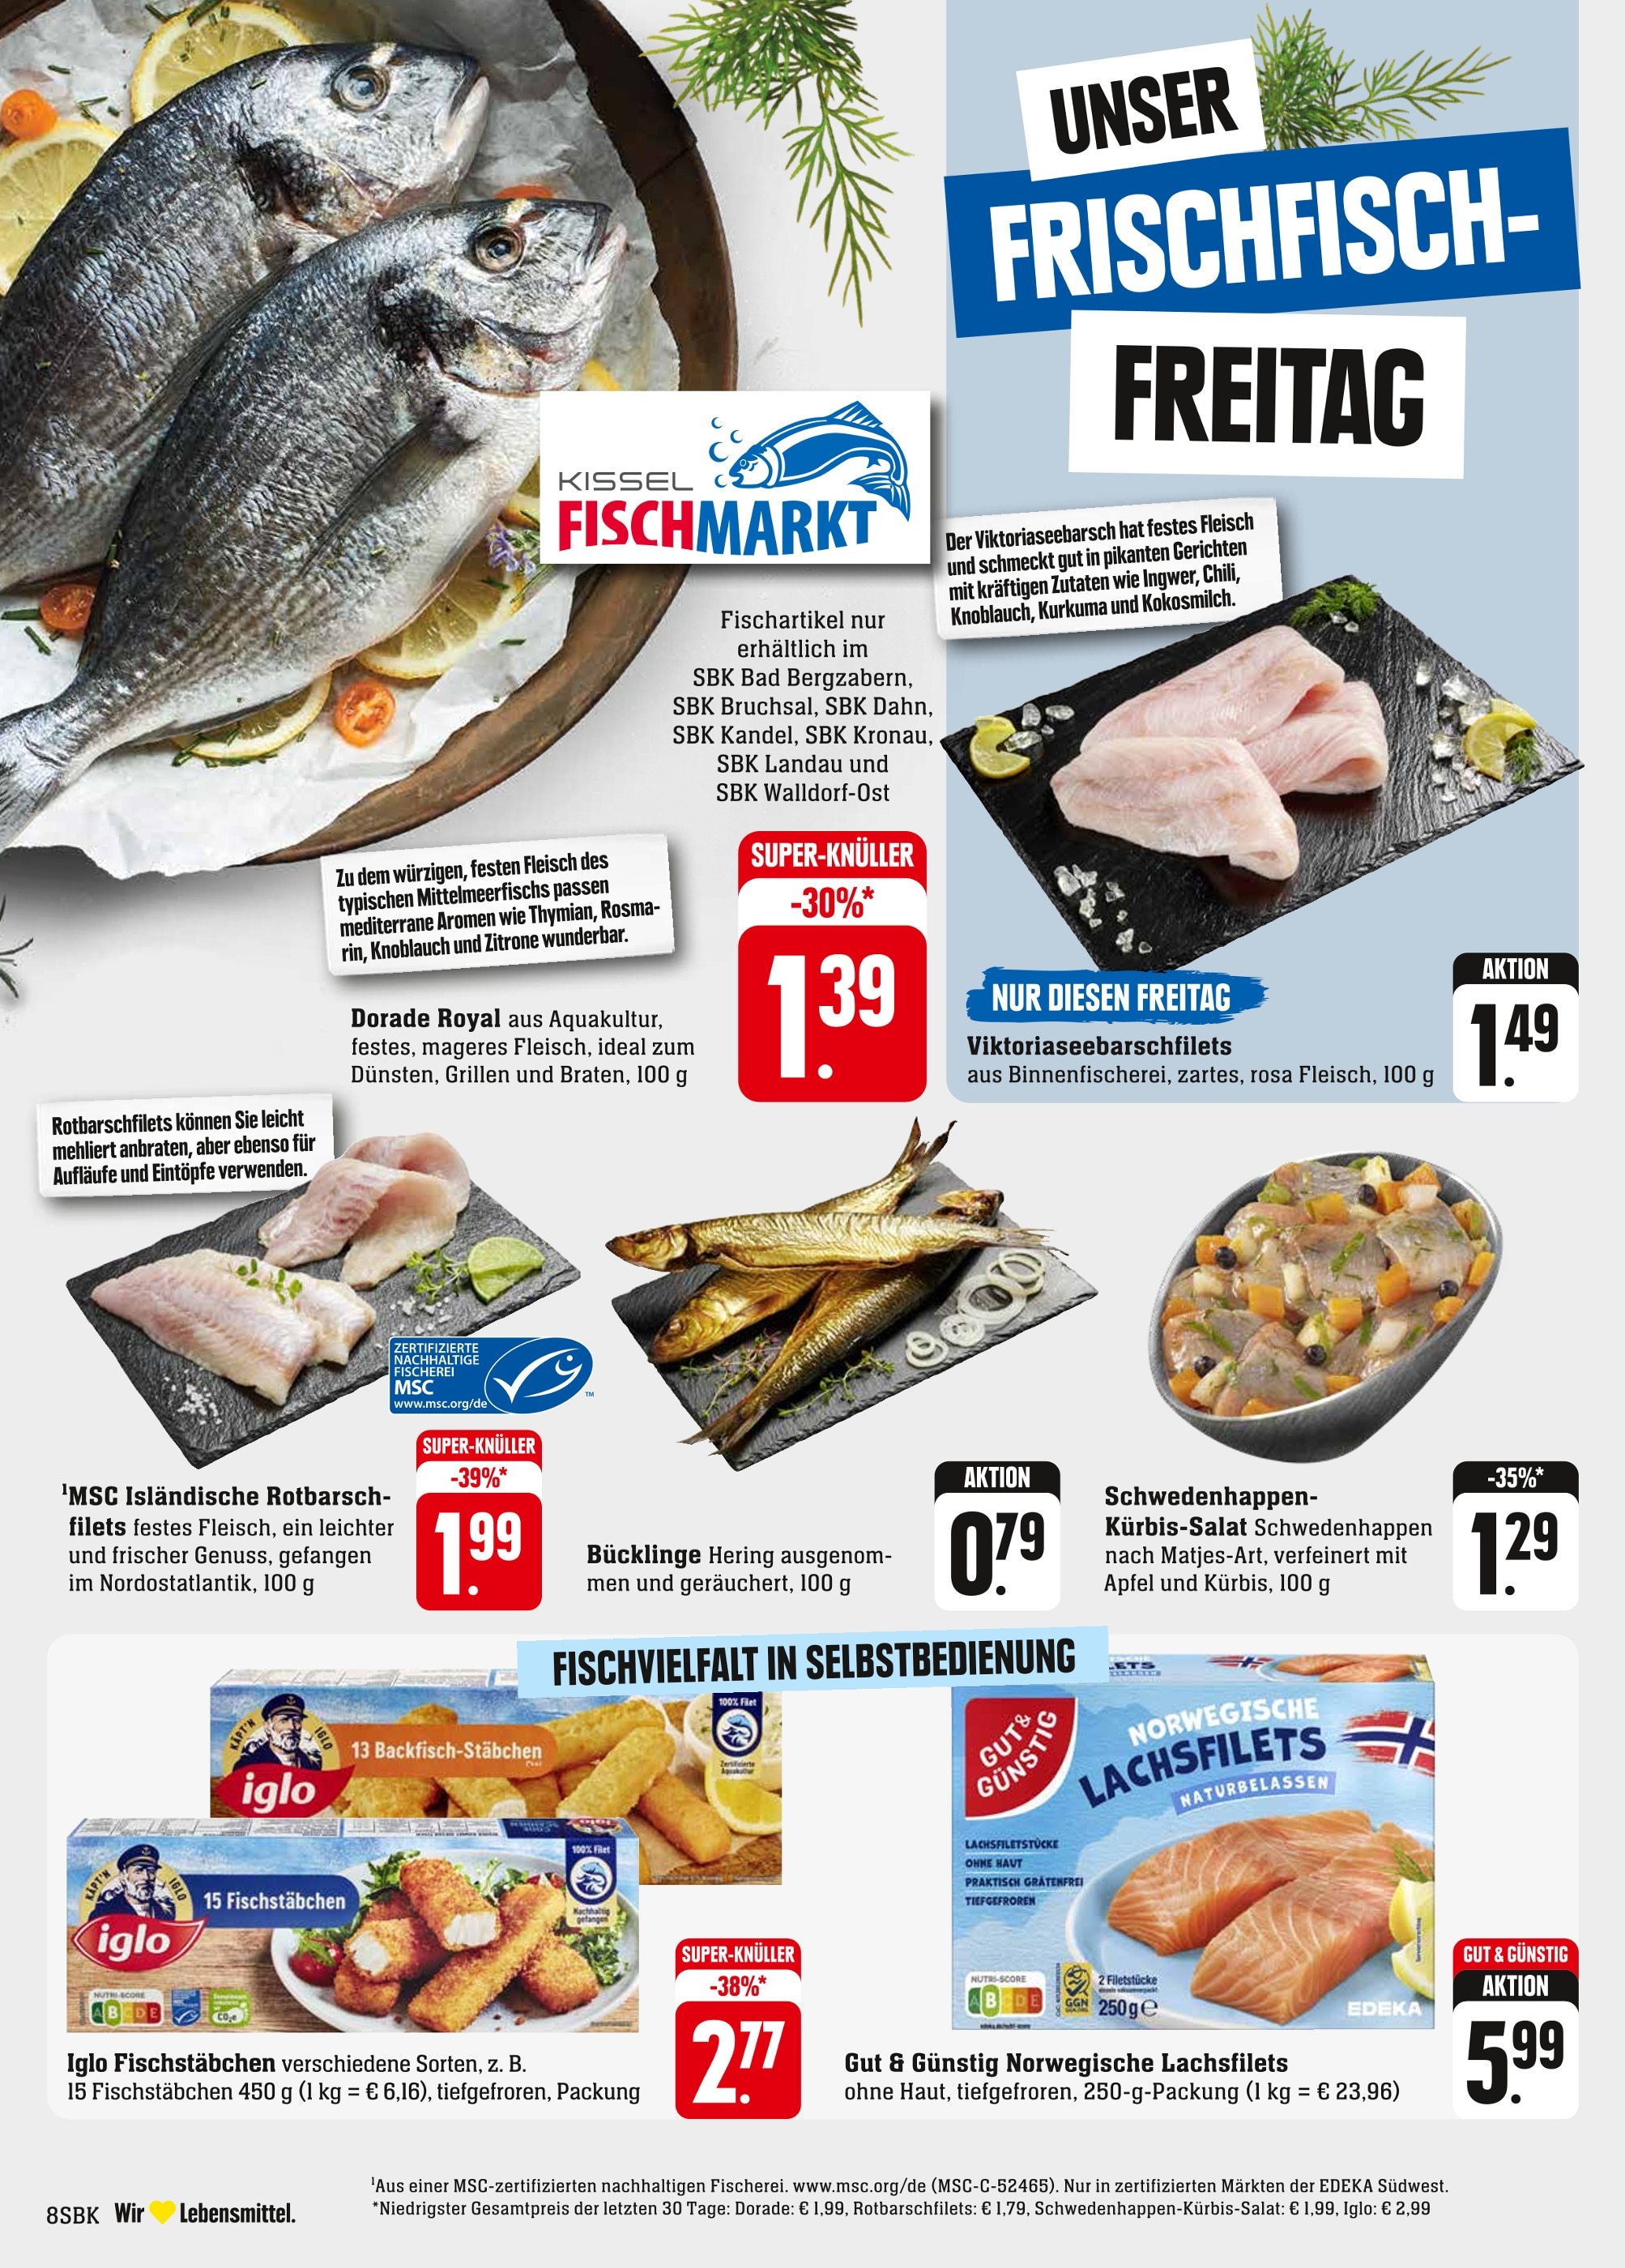 Fisch kaufen in Pirmasens - Angebote Pirmasens günstige in